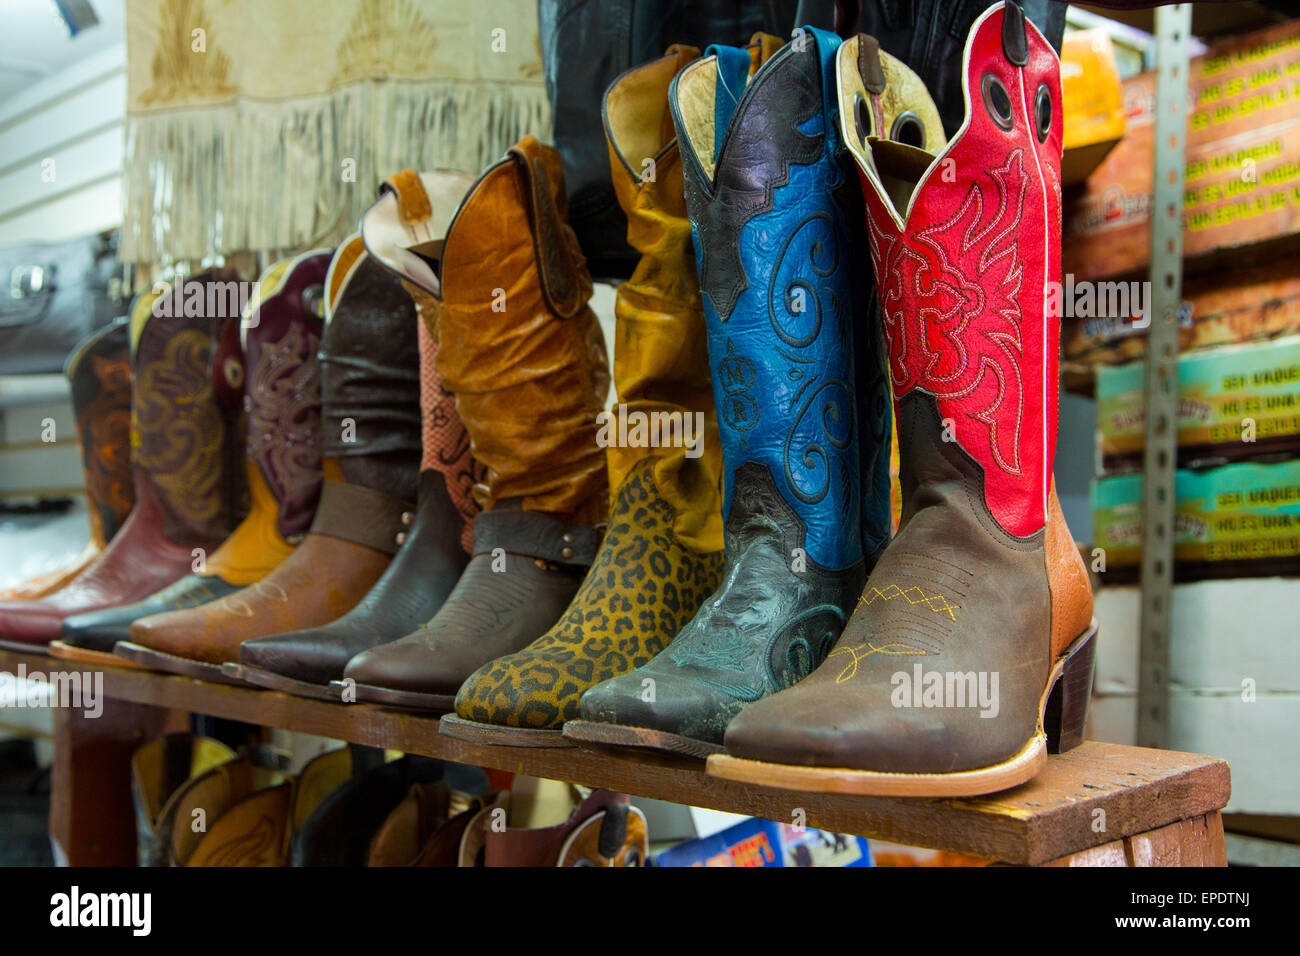 Cowboystiefel Stockfotos und -bilder Kaufen - Alamy